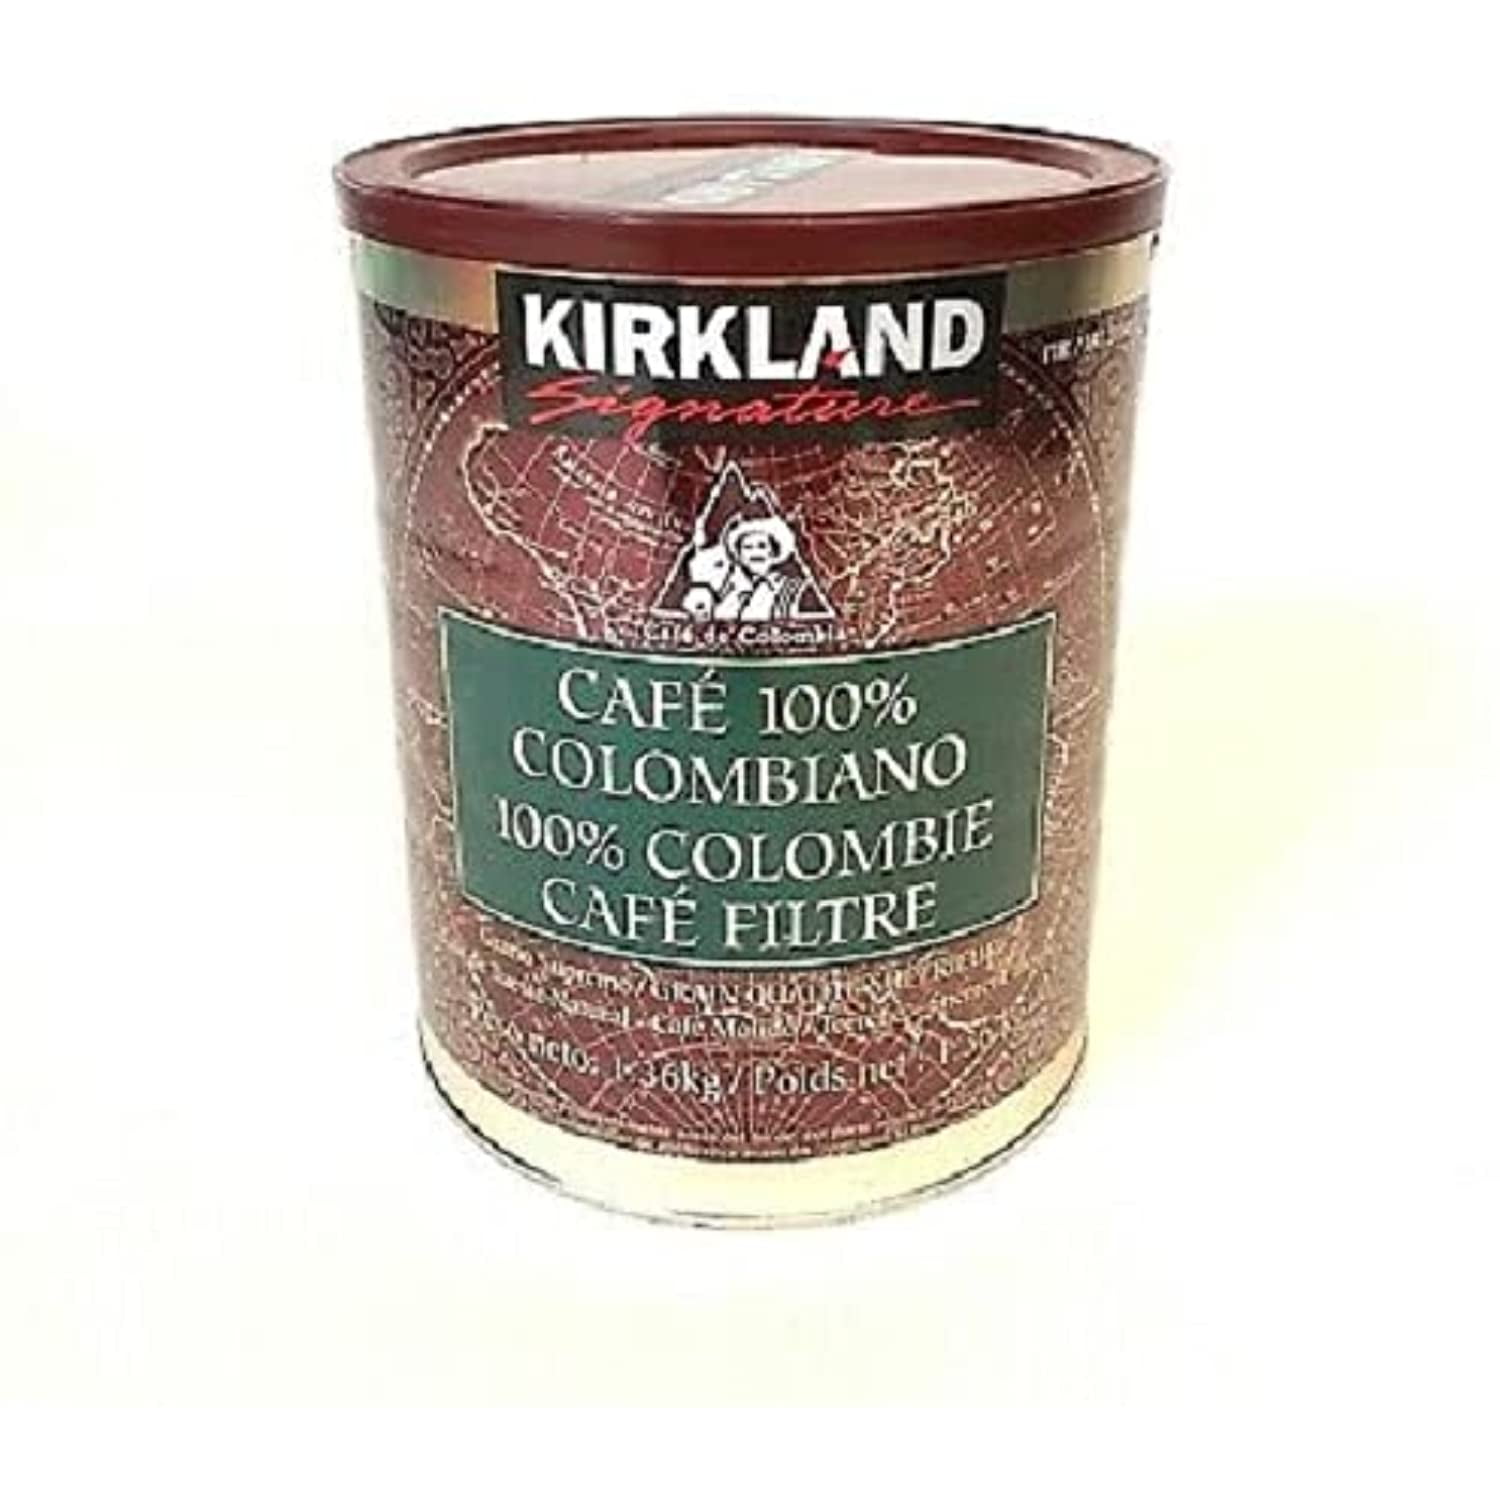 Kirkland Signature Café Molido Descafeinado 1.36 kg